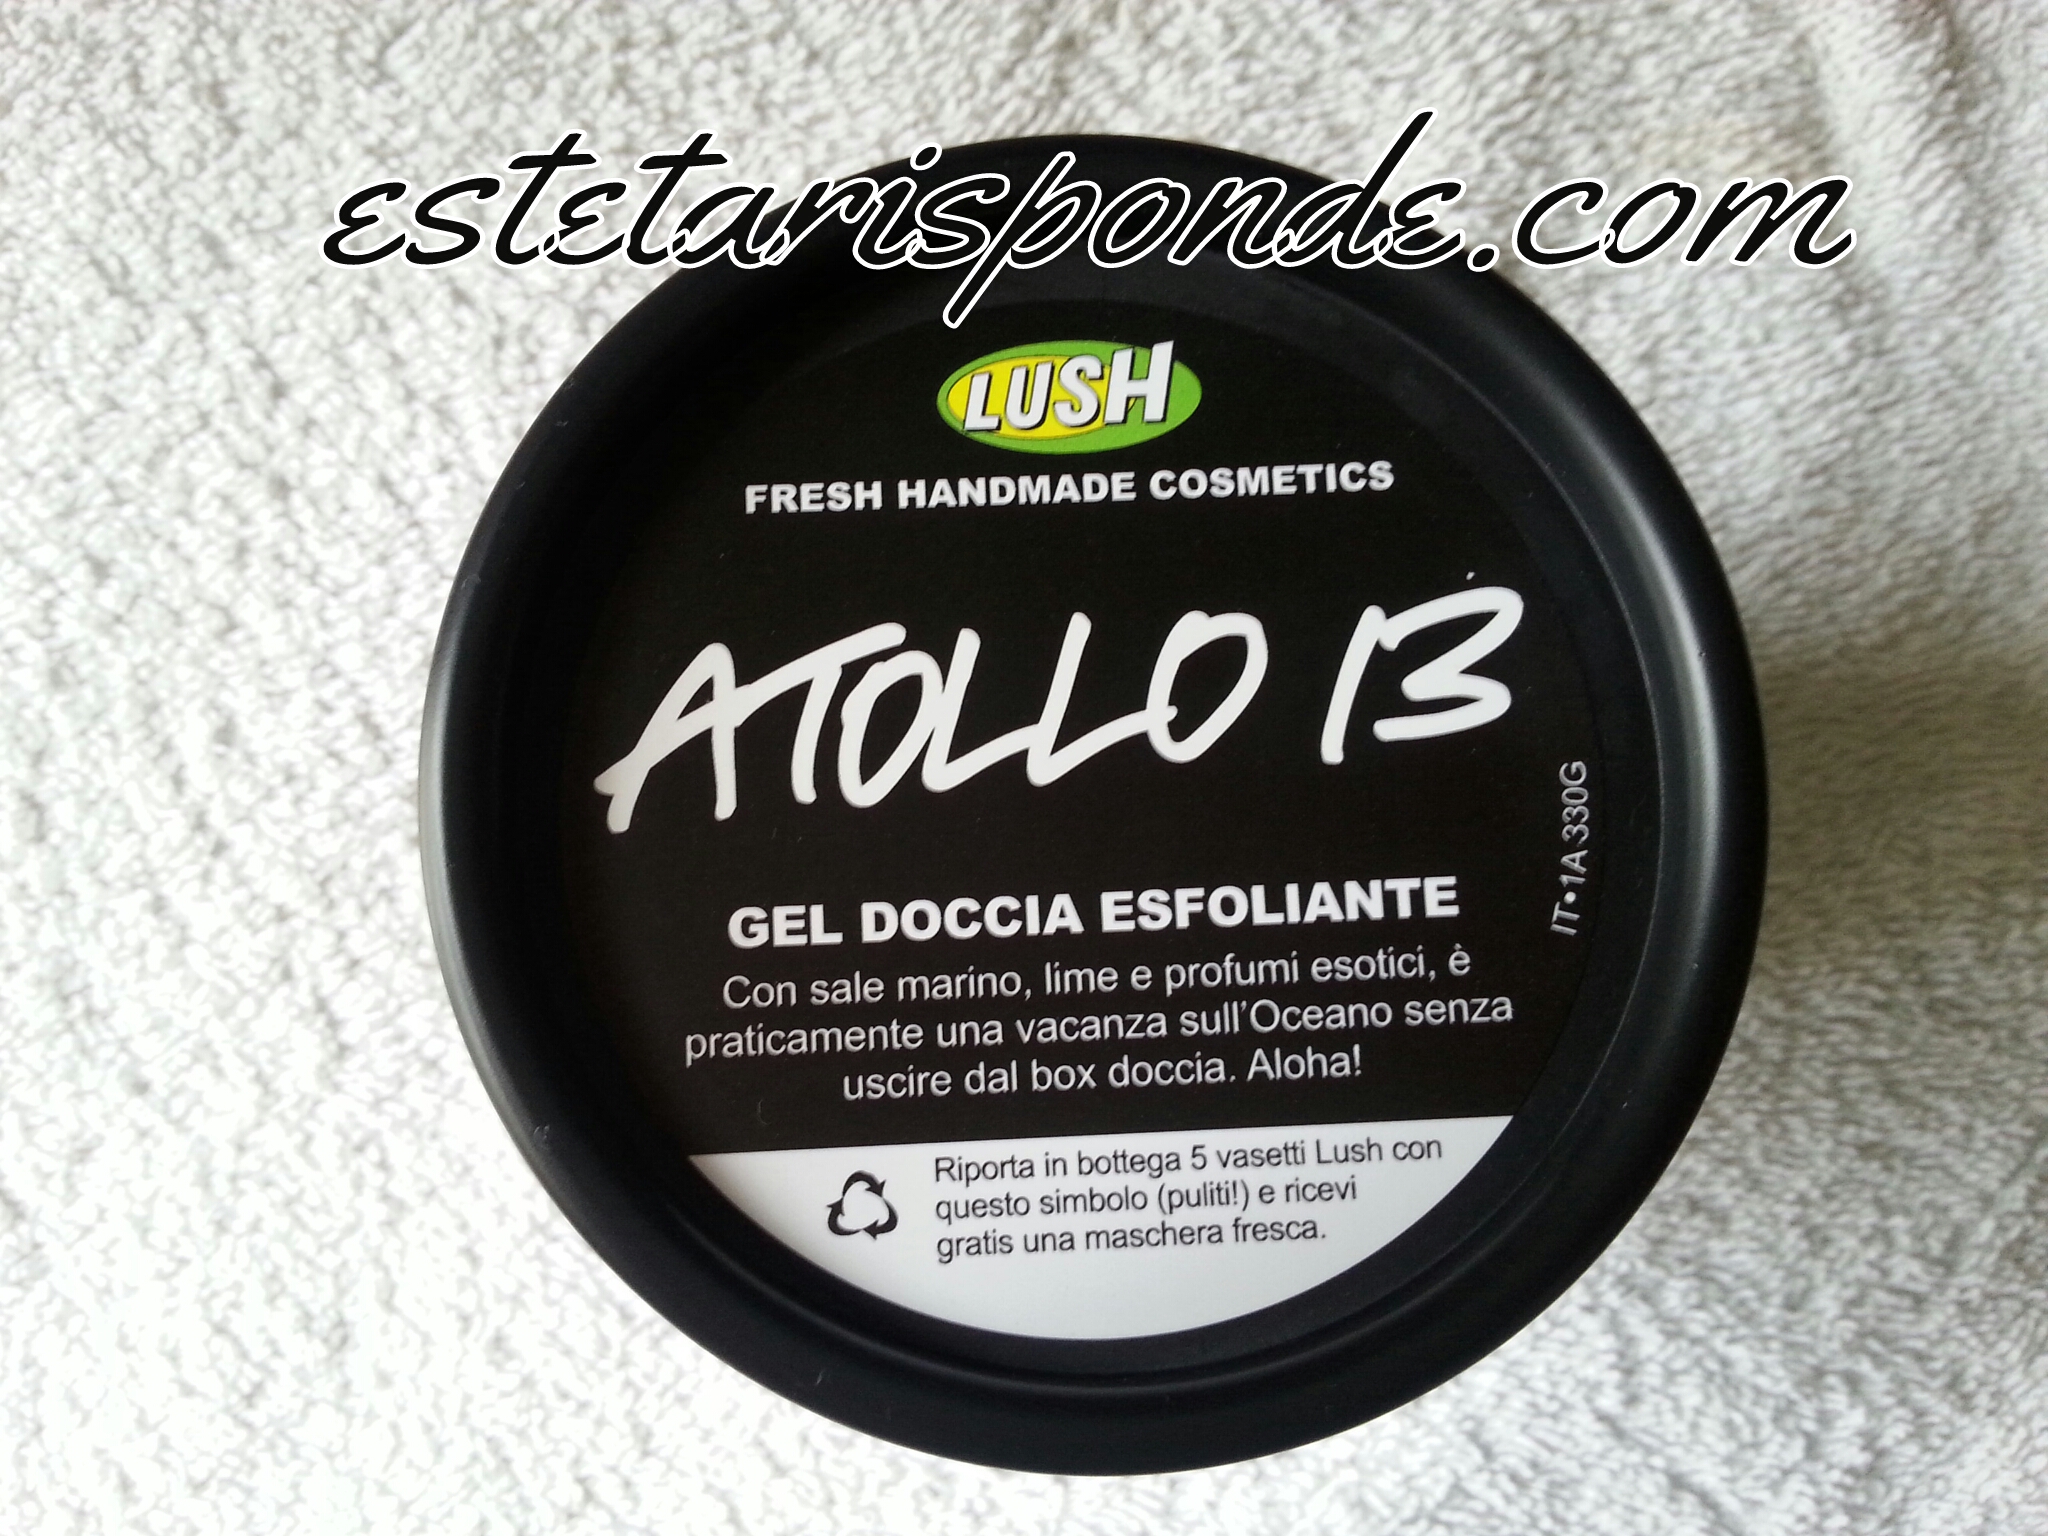 LUSH Atollo 13 gel corpo esfoliante